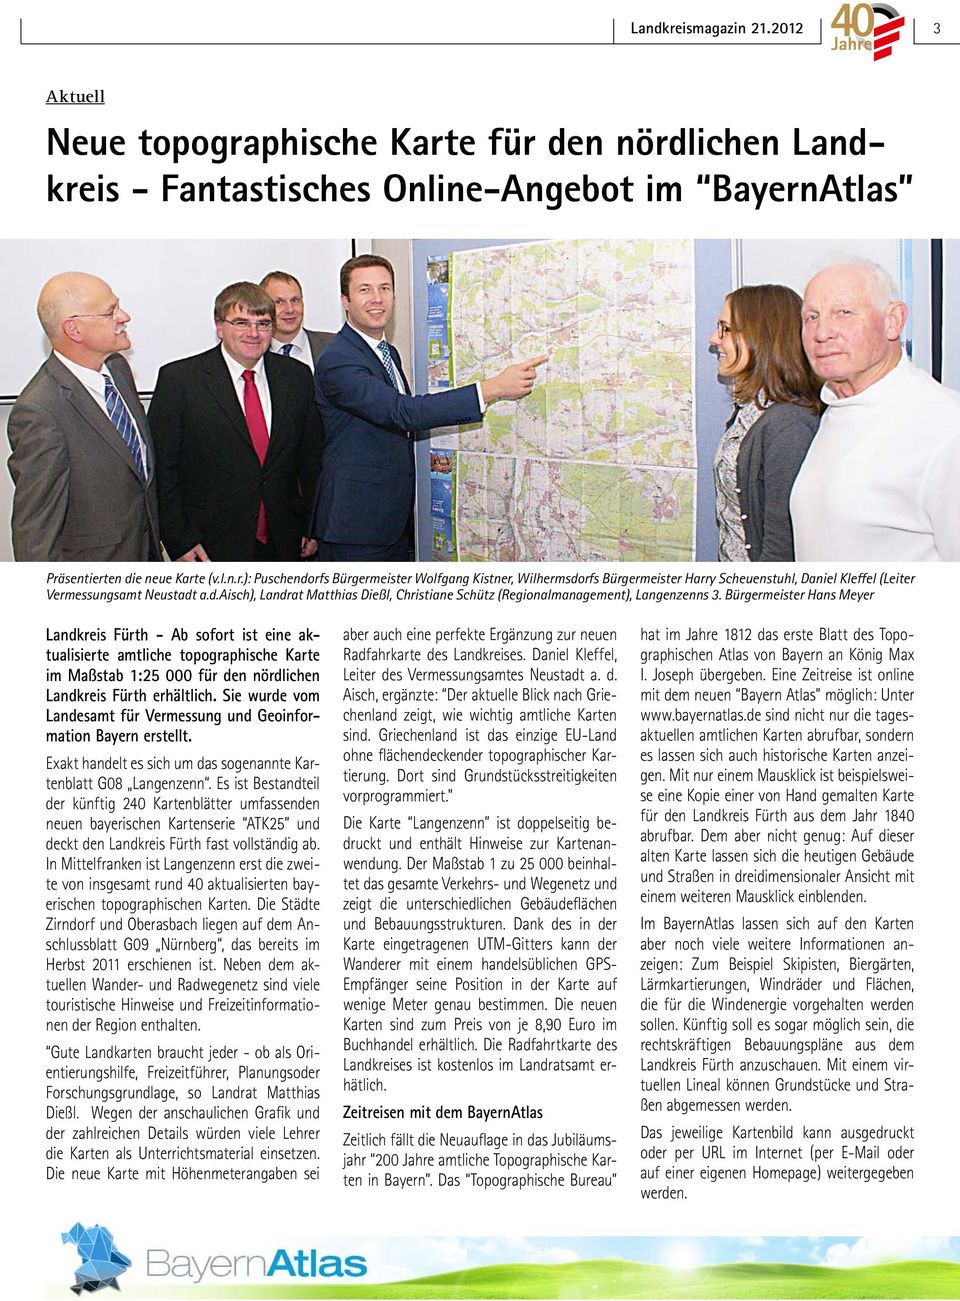 Bürgermeister Hans Meyer Landkreis Fürth - Ab sofort ist eine aktualisierte amtliche topographische Karte im Maßstab 1:25 000 für den nördlichen Landkreis Fürth erhältlich.